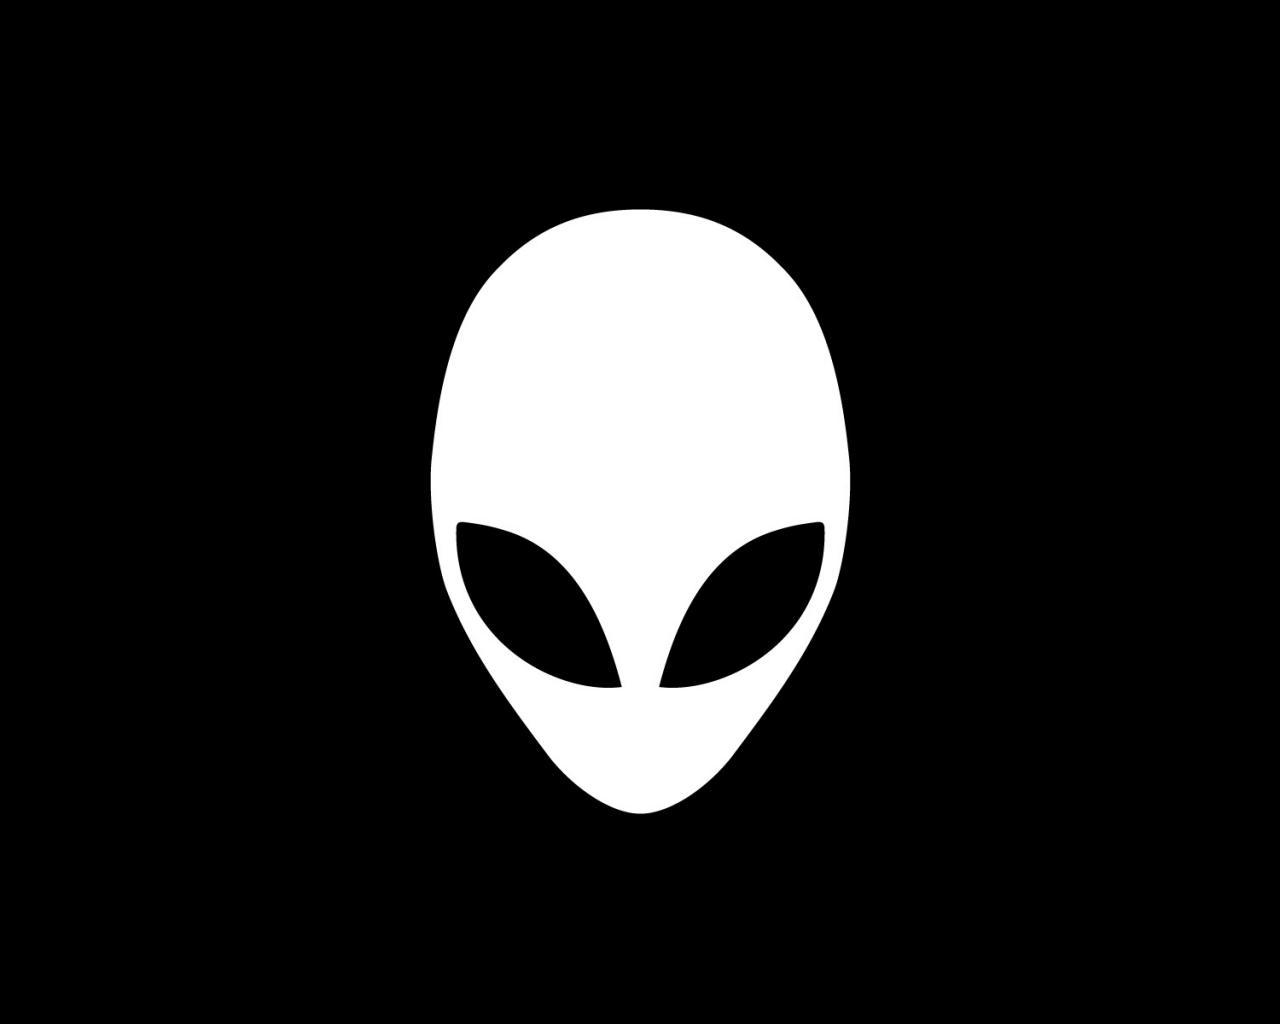 Скачать обои Инопланетяне Нло (Extraterrestrials Ufo) на телефон бесплатно